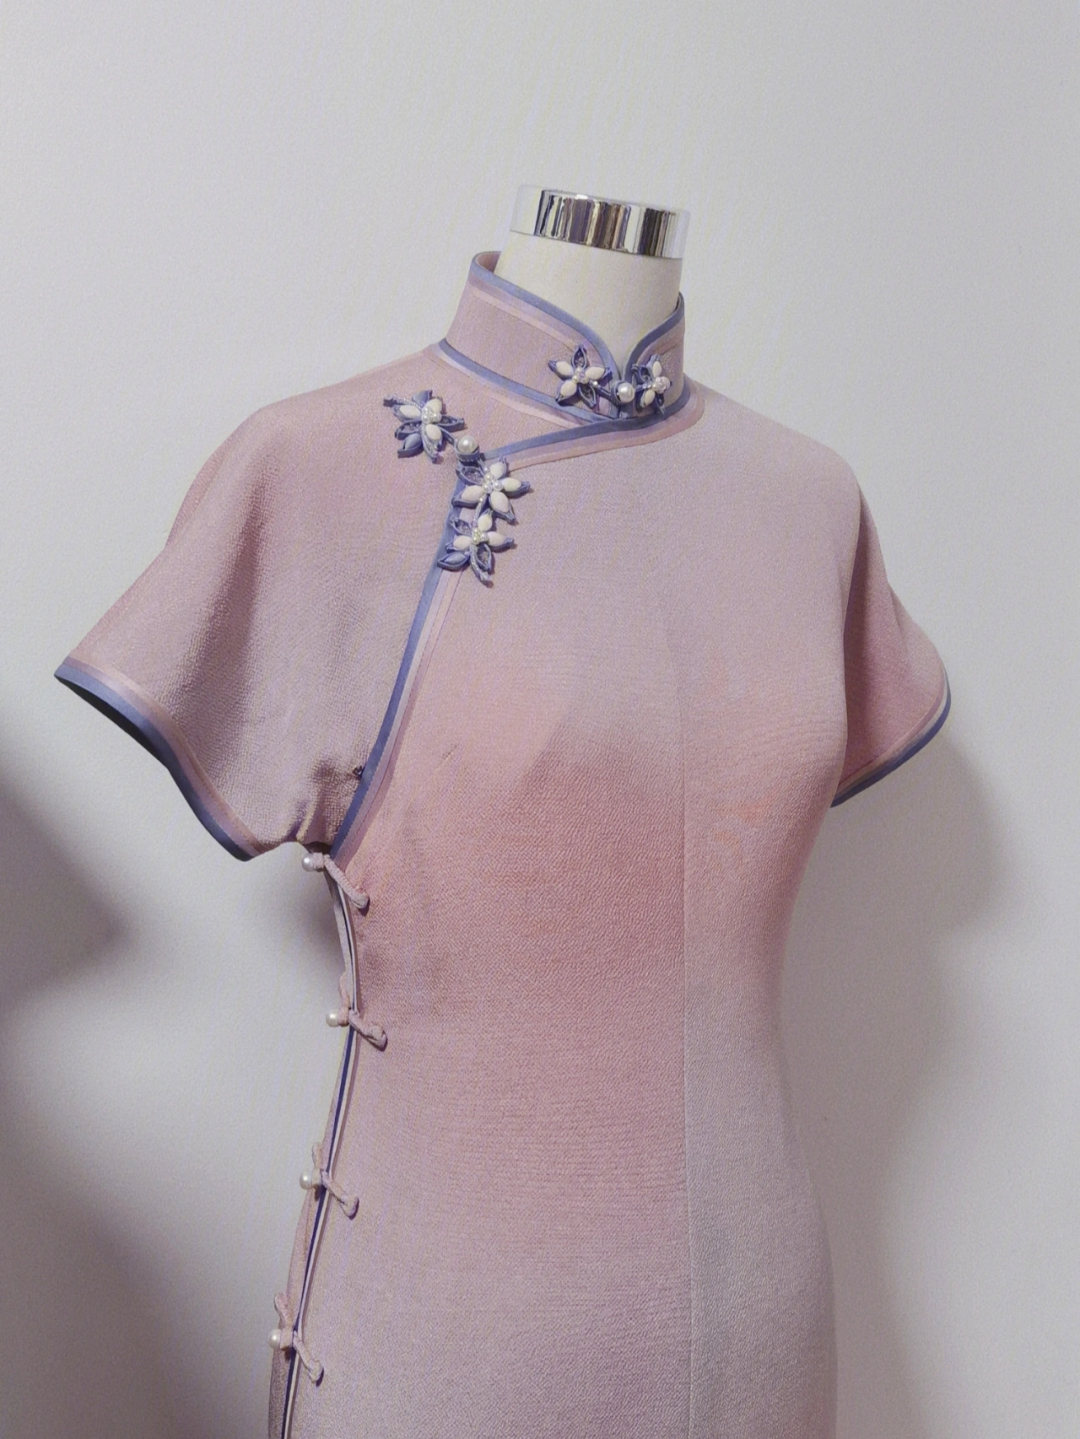 材质:正绢里衬:丝棉工艺:三色绲边,填芯花扣这款旗袍绲边颜色搭配特别